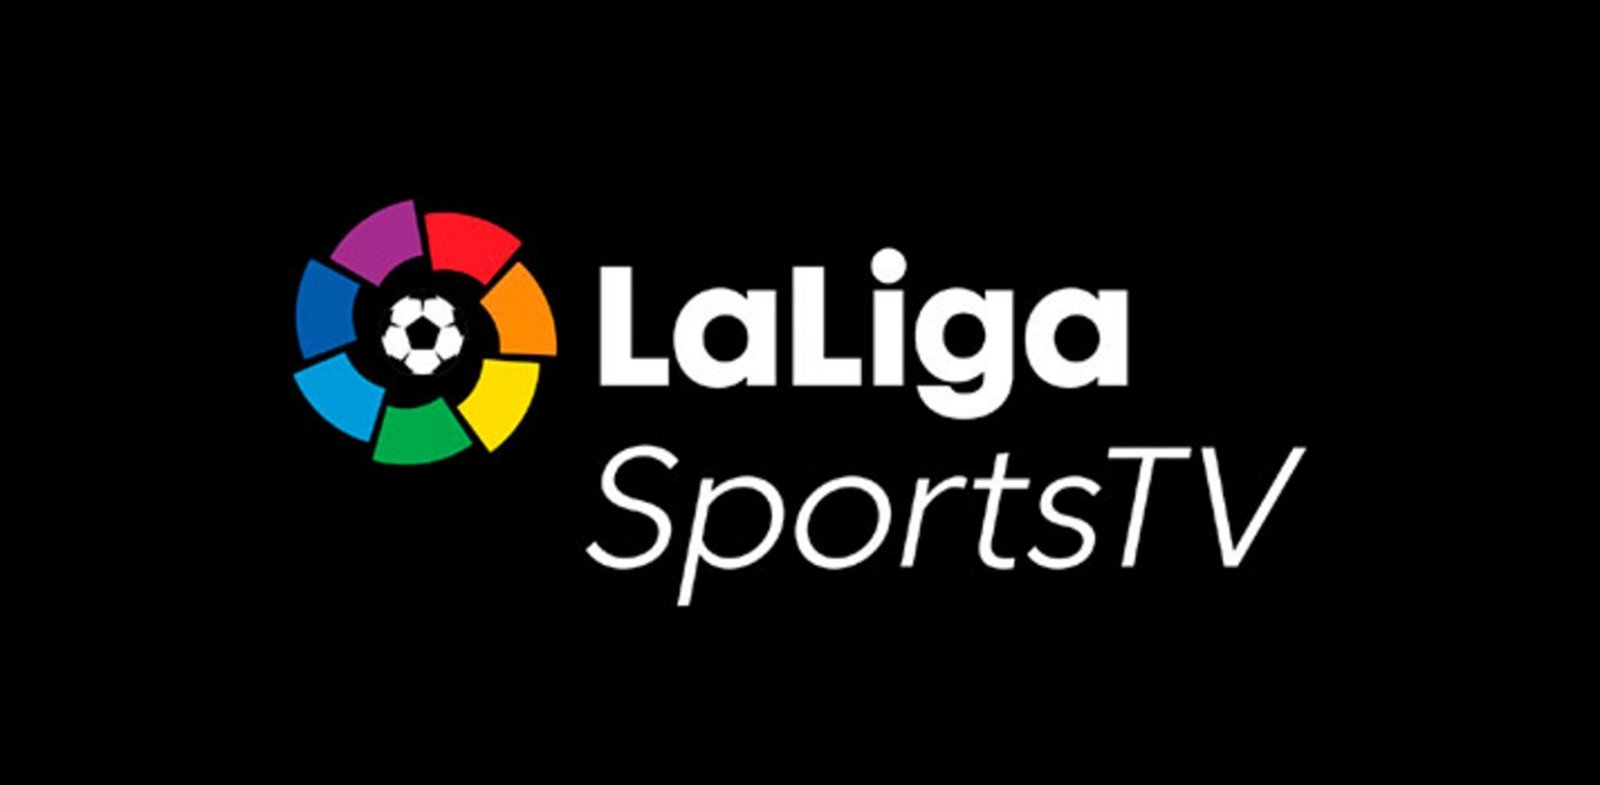 El logo de LaLiga Sports TV